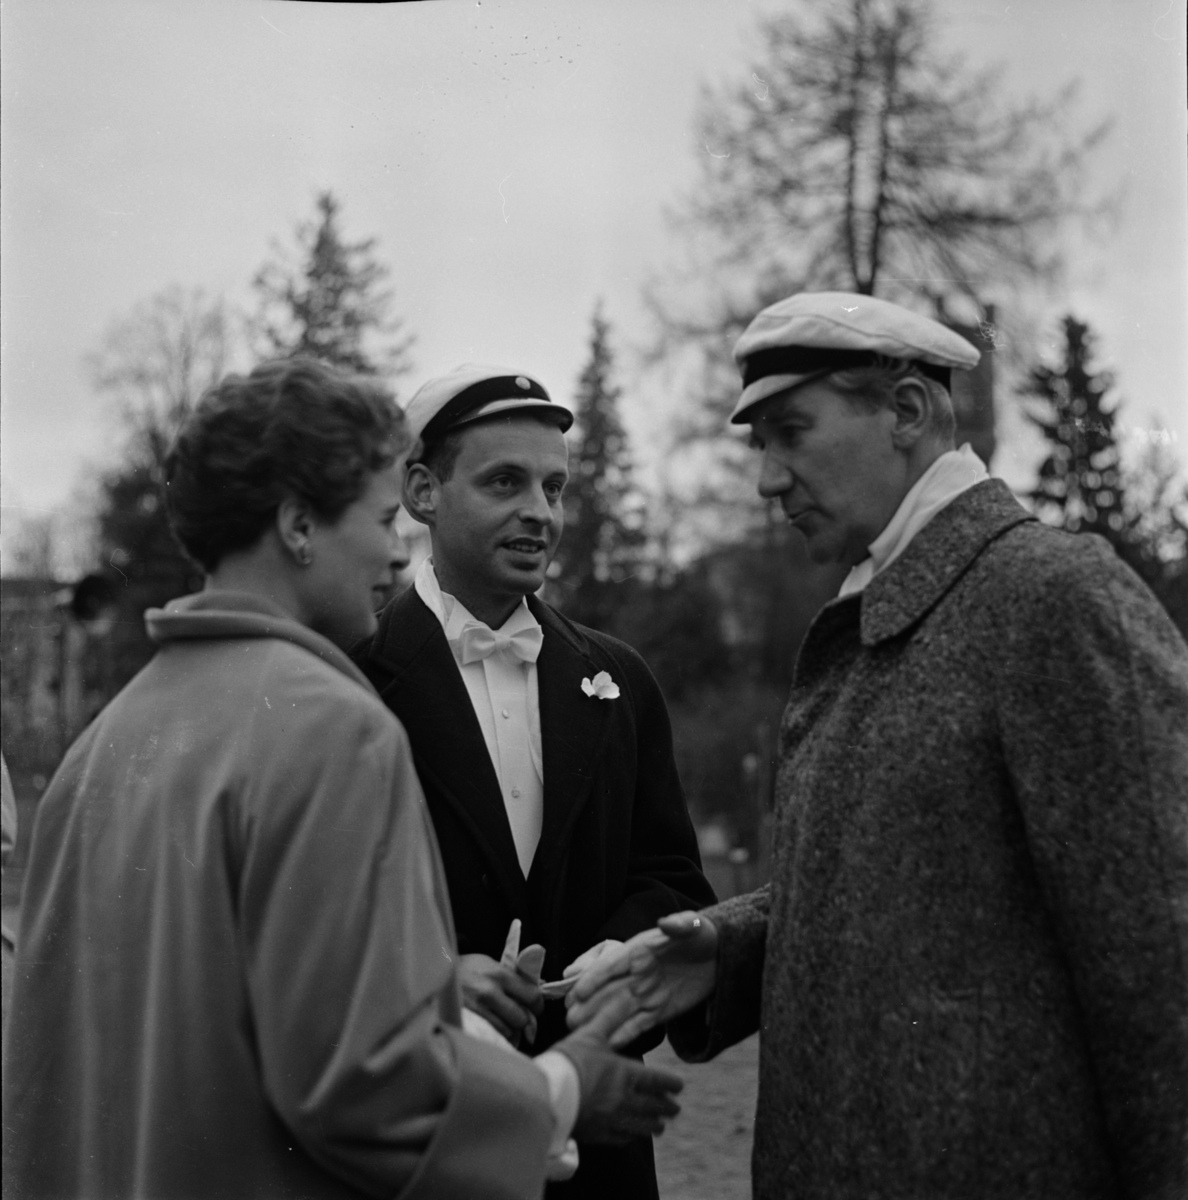 "Vårfest", Uppsala 1957